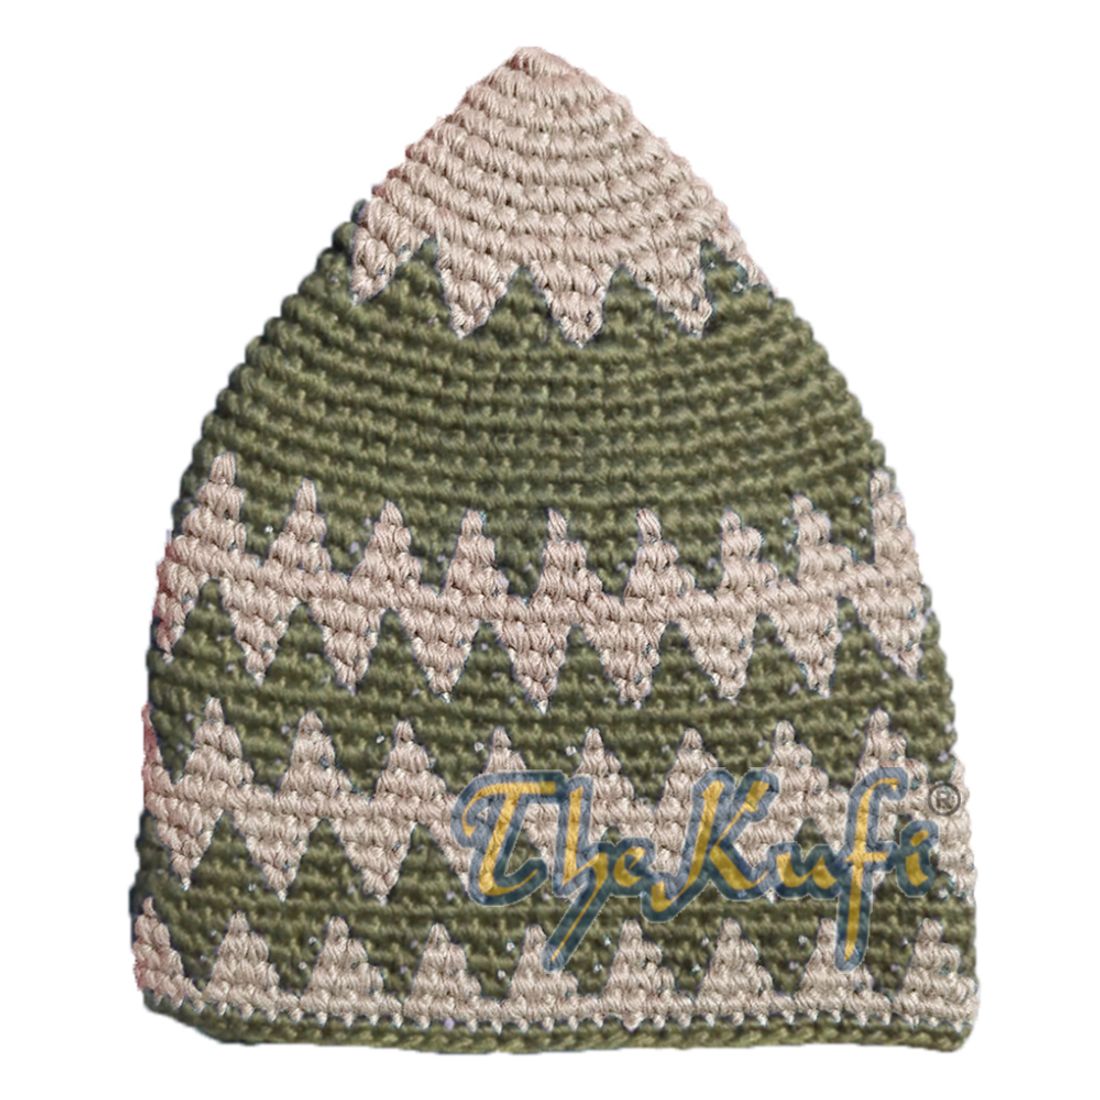 Hand-crocheted Cotton Sturdy Dark Cream & Dark Khaki Zigzag Kufi Hat